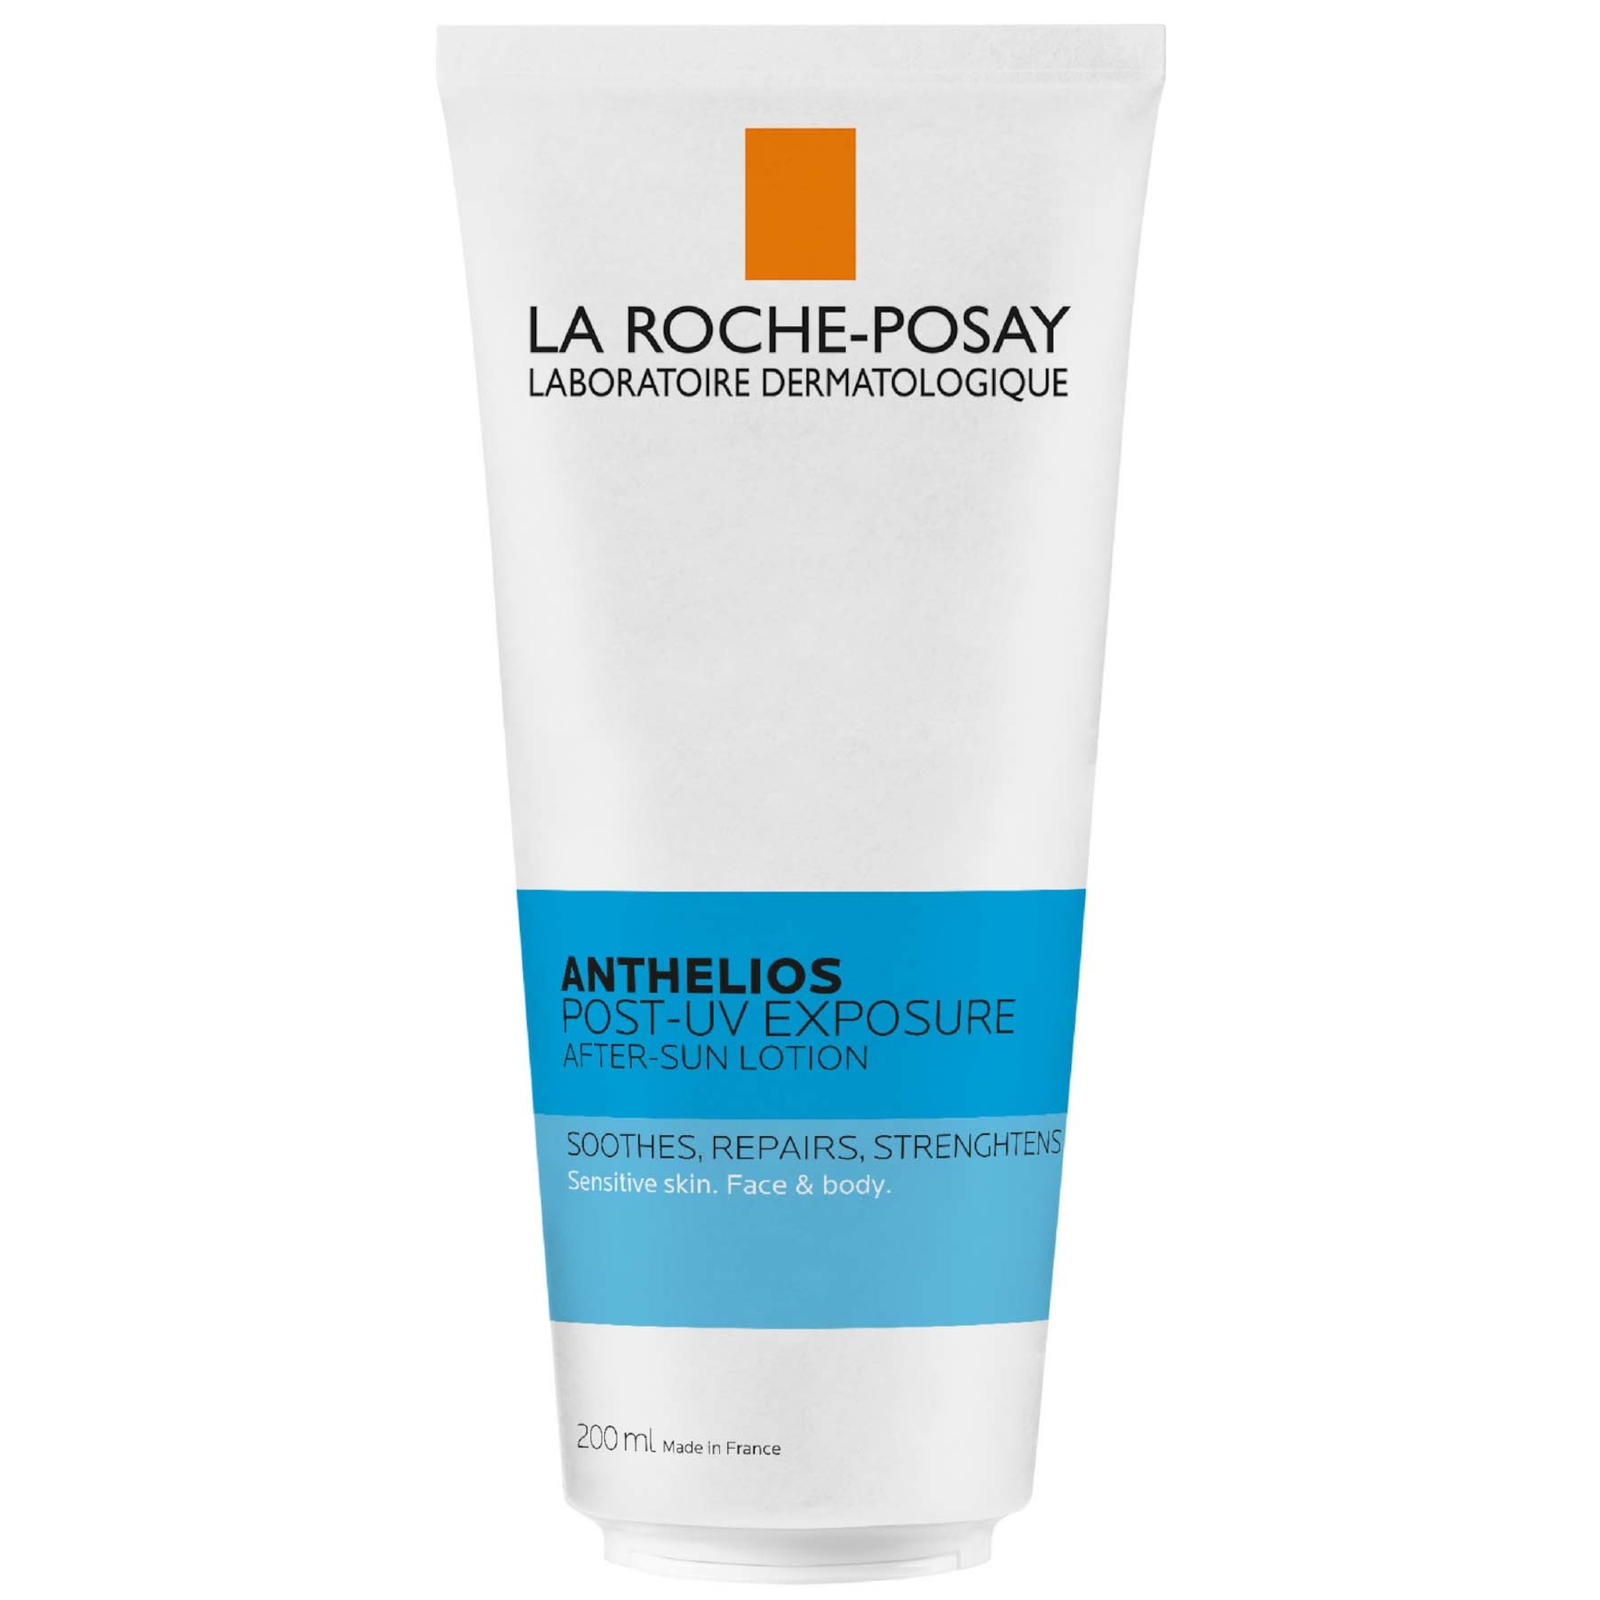 La Roche-Posay Anthelios Post UV Exposure After Sun Lotion 200ml von La Roche-Posay